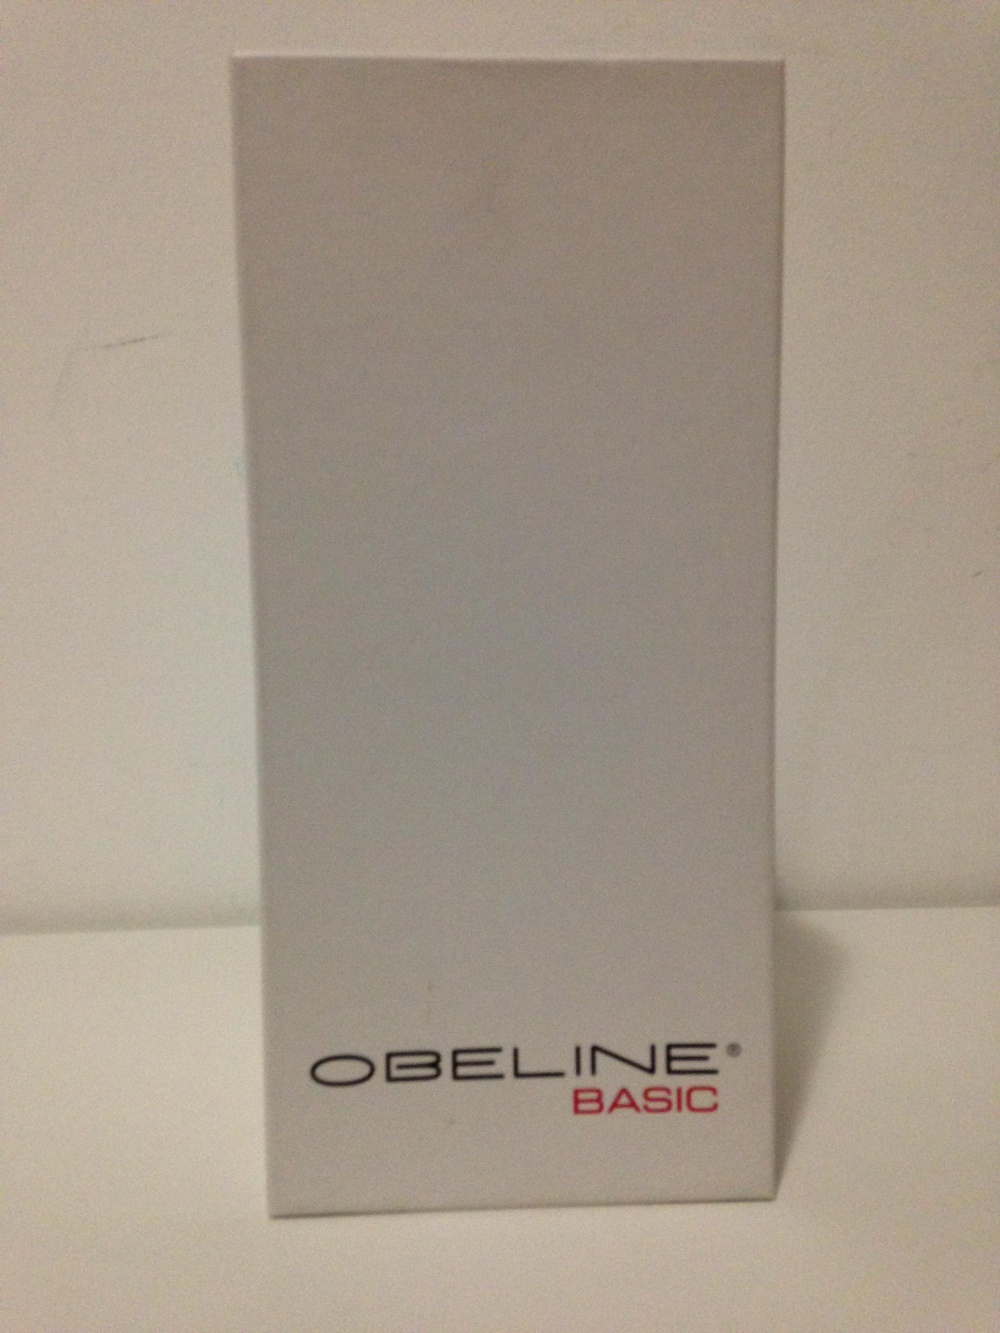 Шлёпанцы " OBELINE ", 39 размер, Италия.